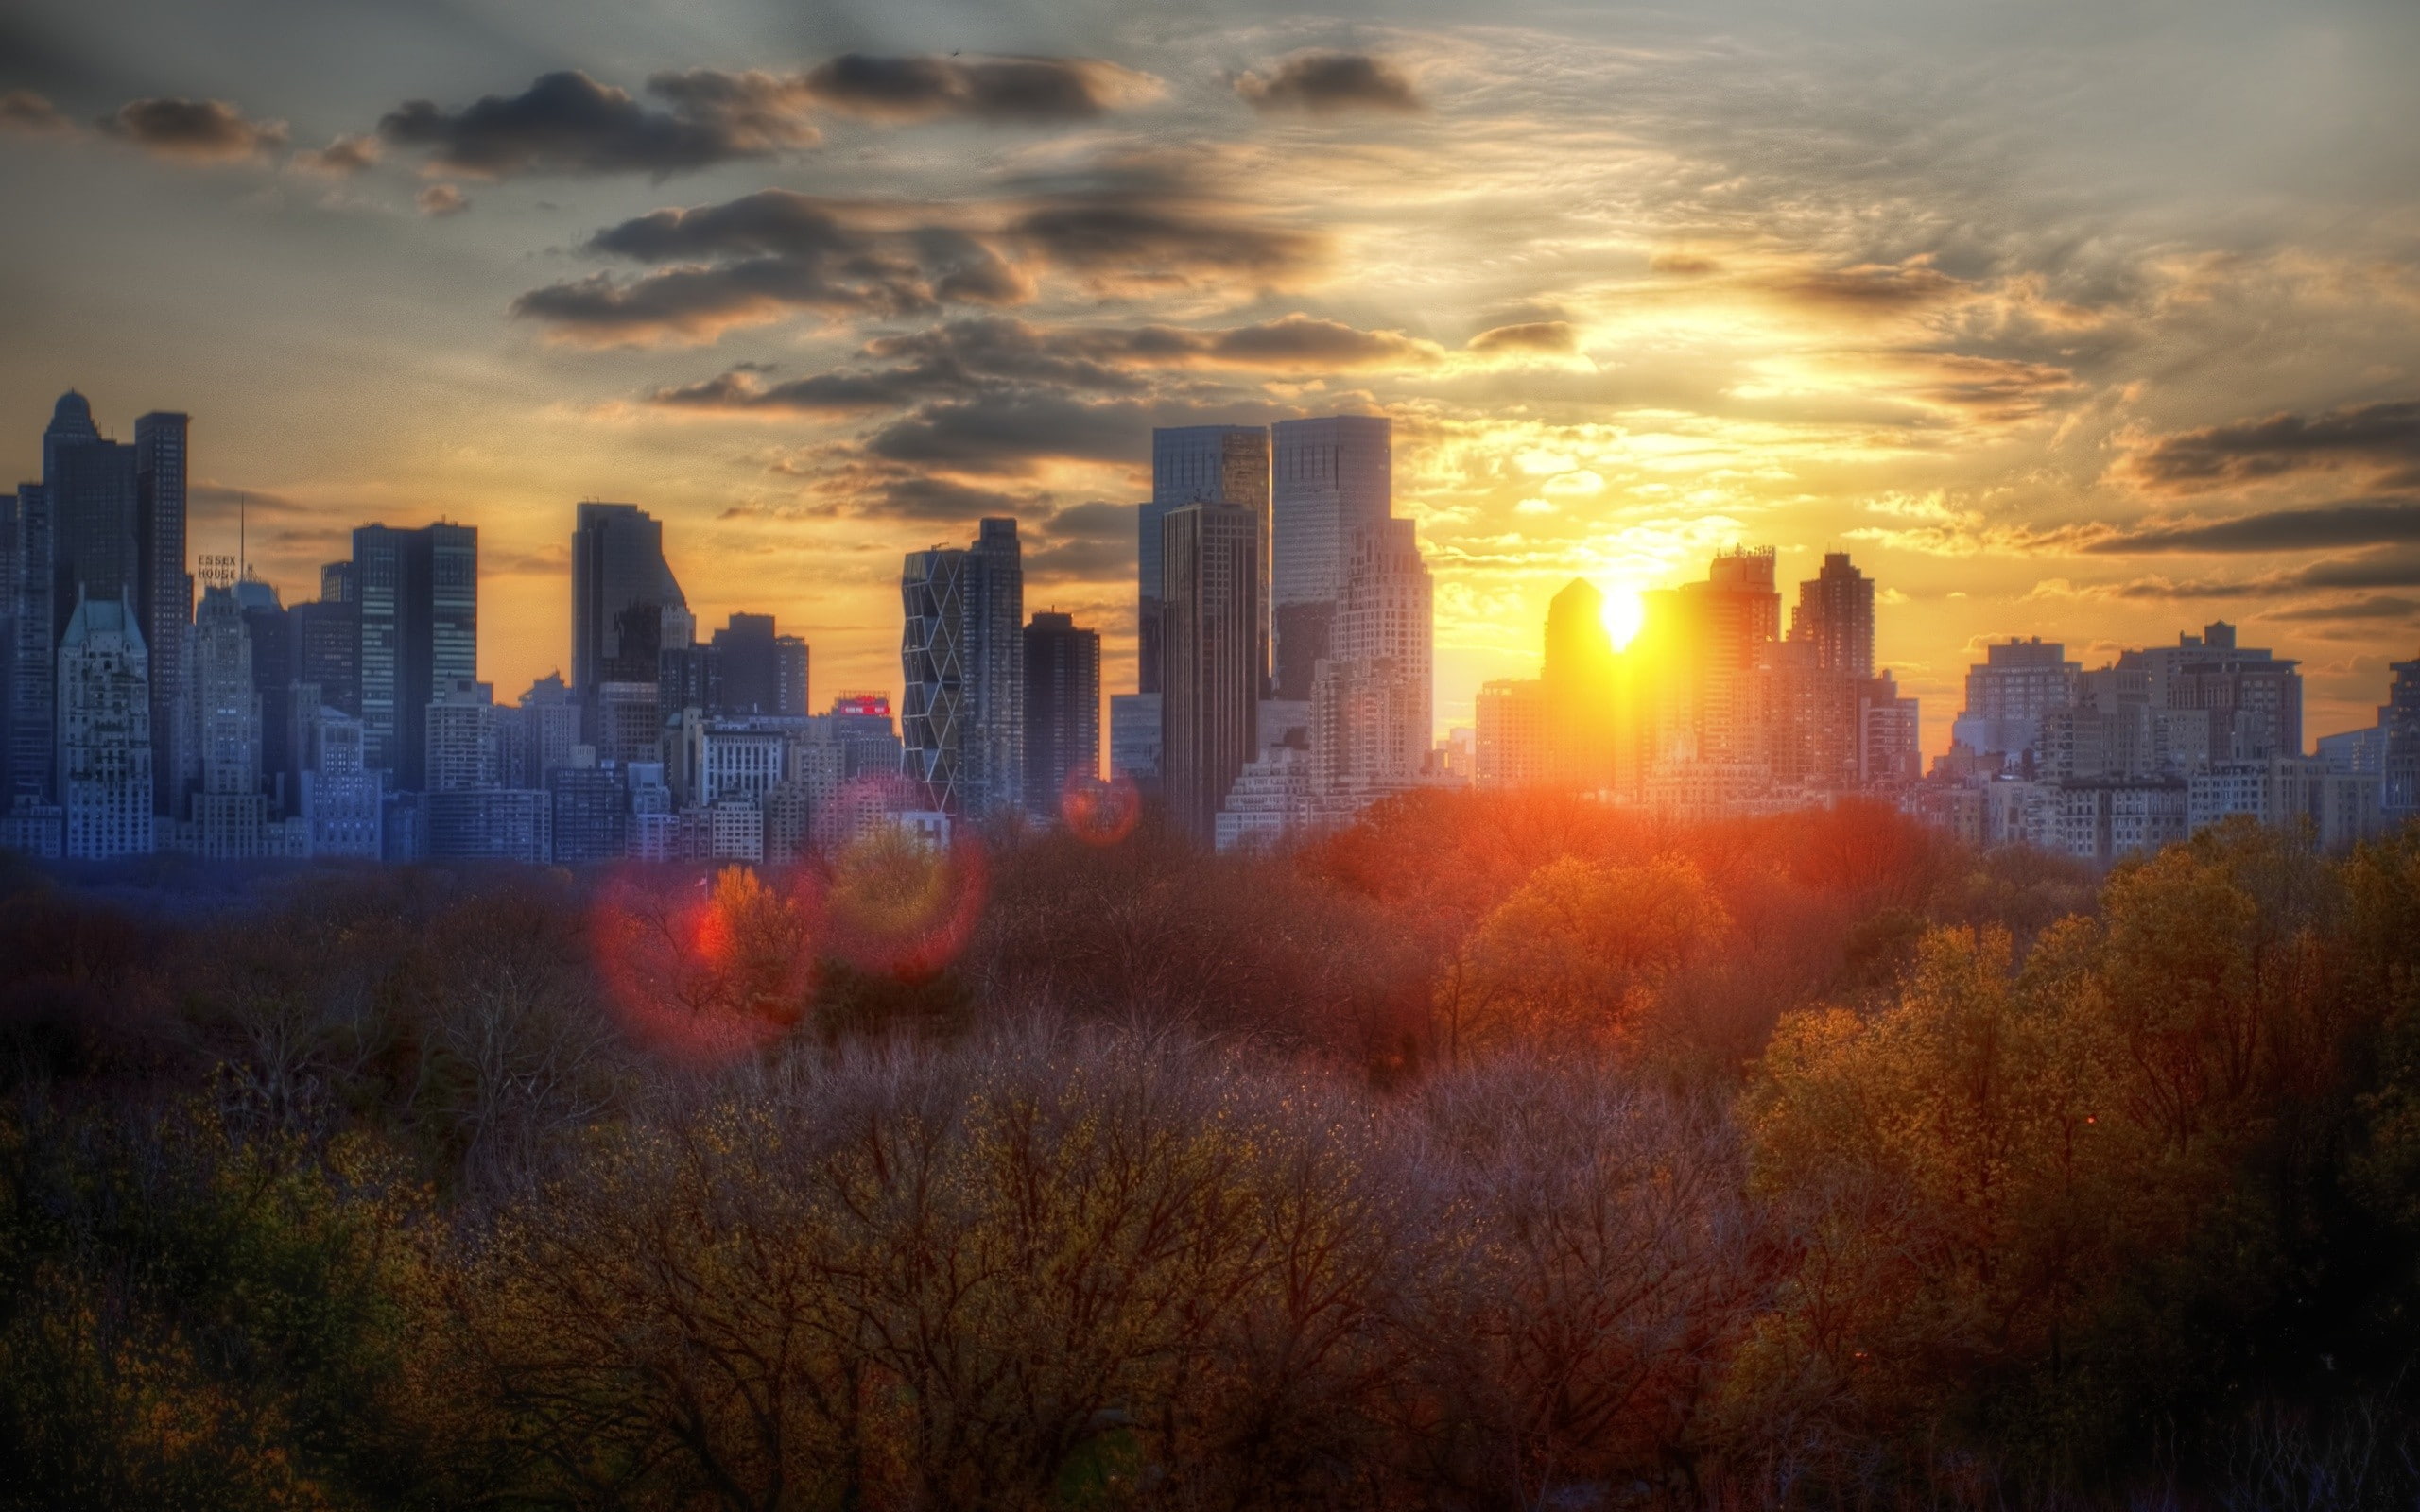 Central Park, city, sunset, building exterior, architecture